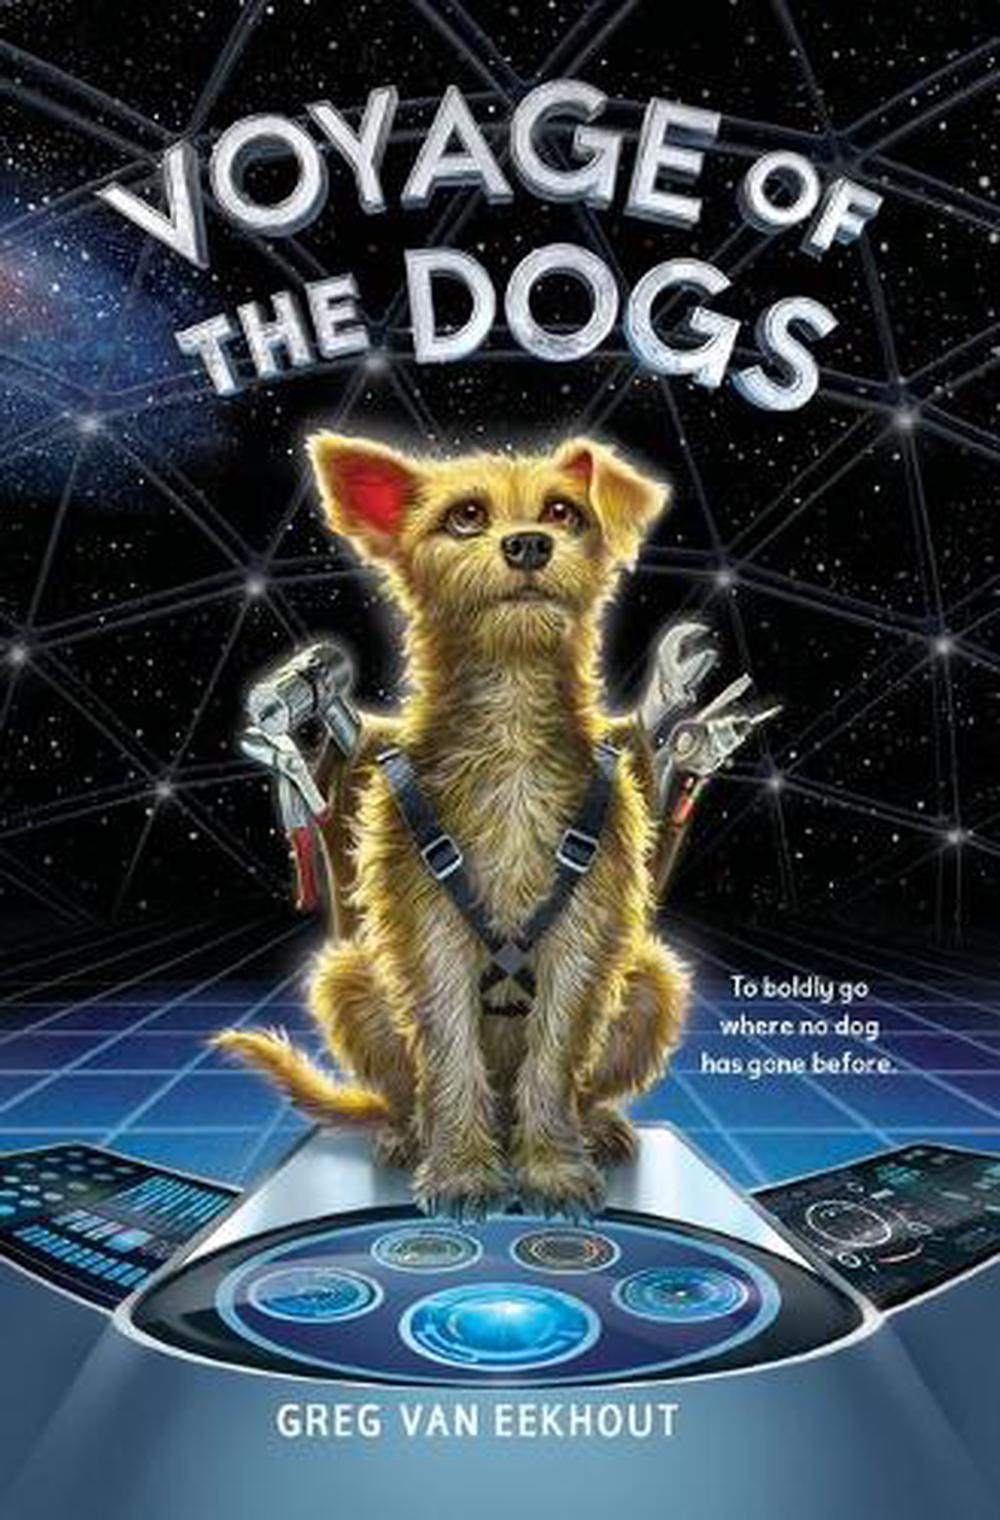 Voyage of the Dogs by Greg Van Eekhout